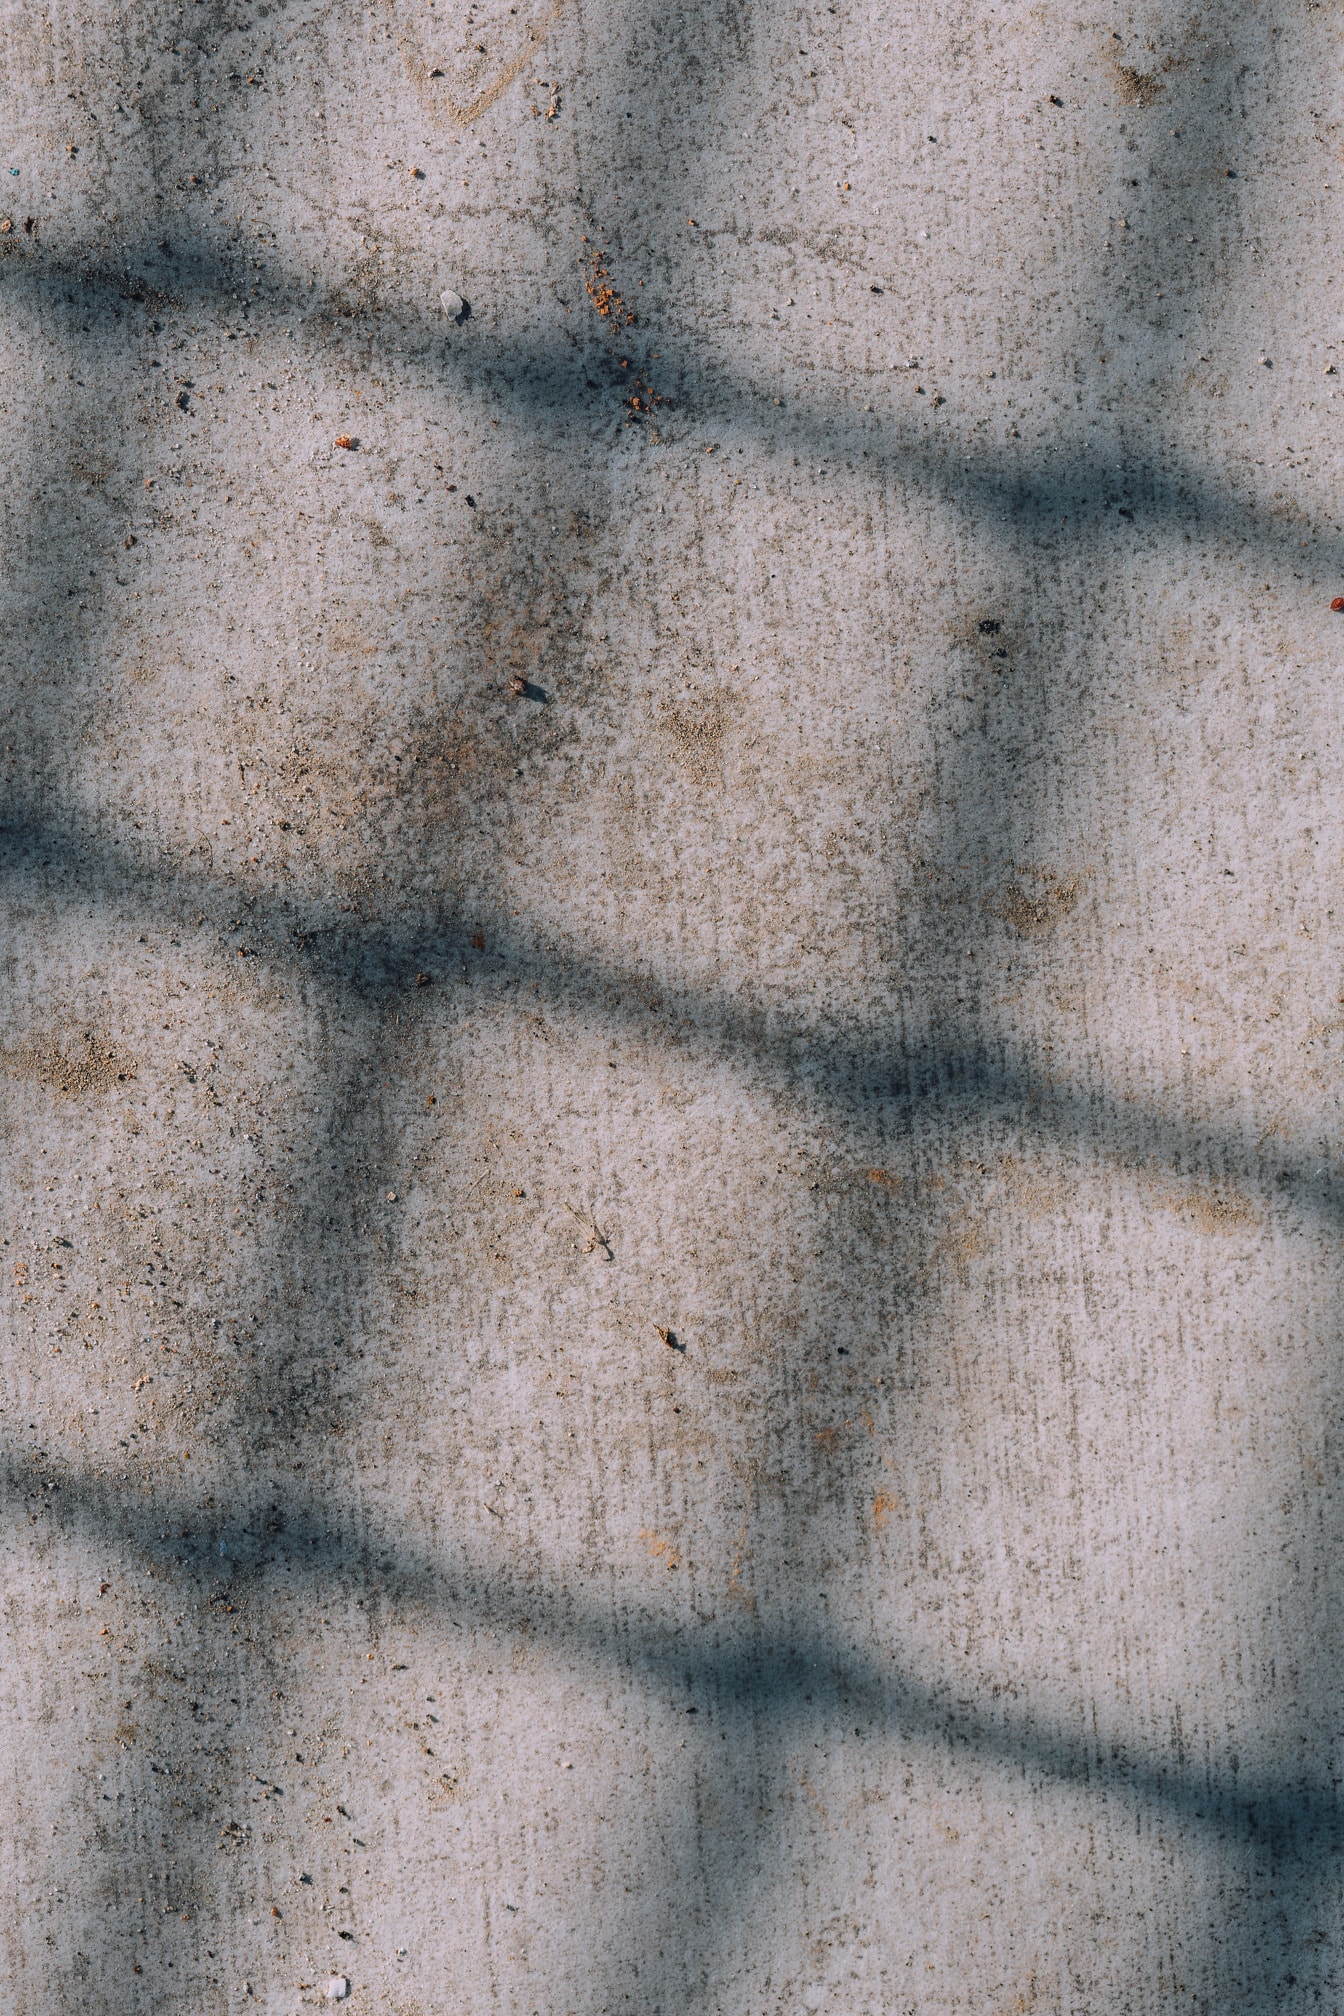 Lekeli kirli bir beton yüzeyde dikdörtgen şeklinde gölge